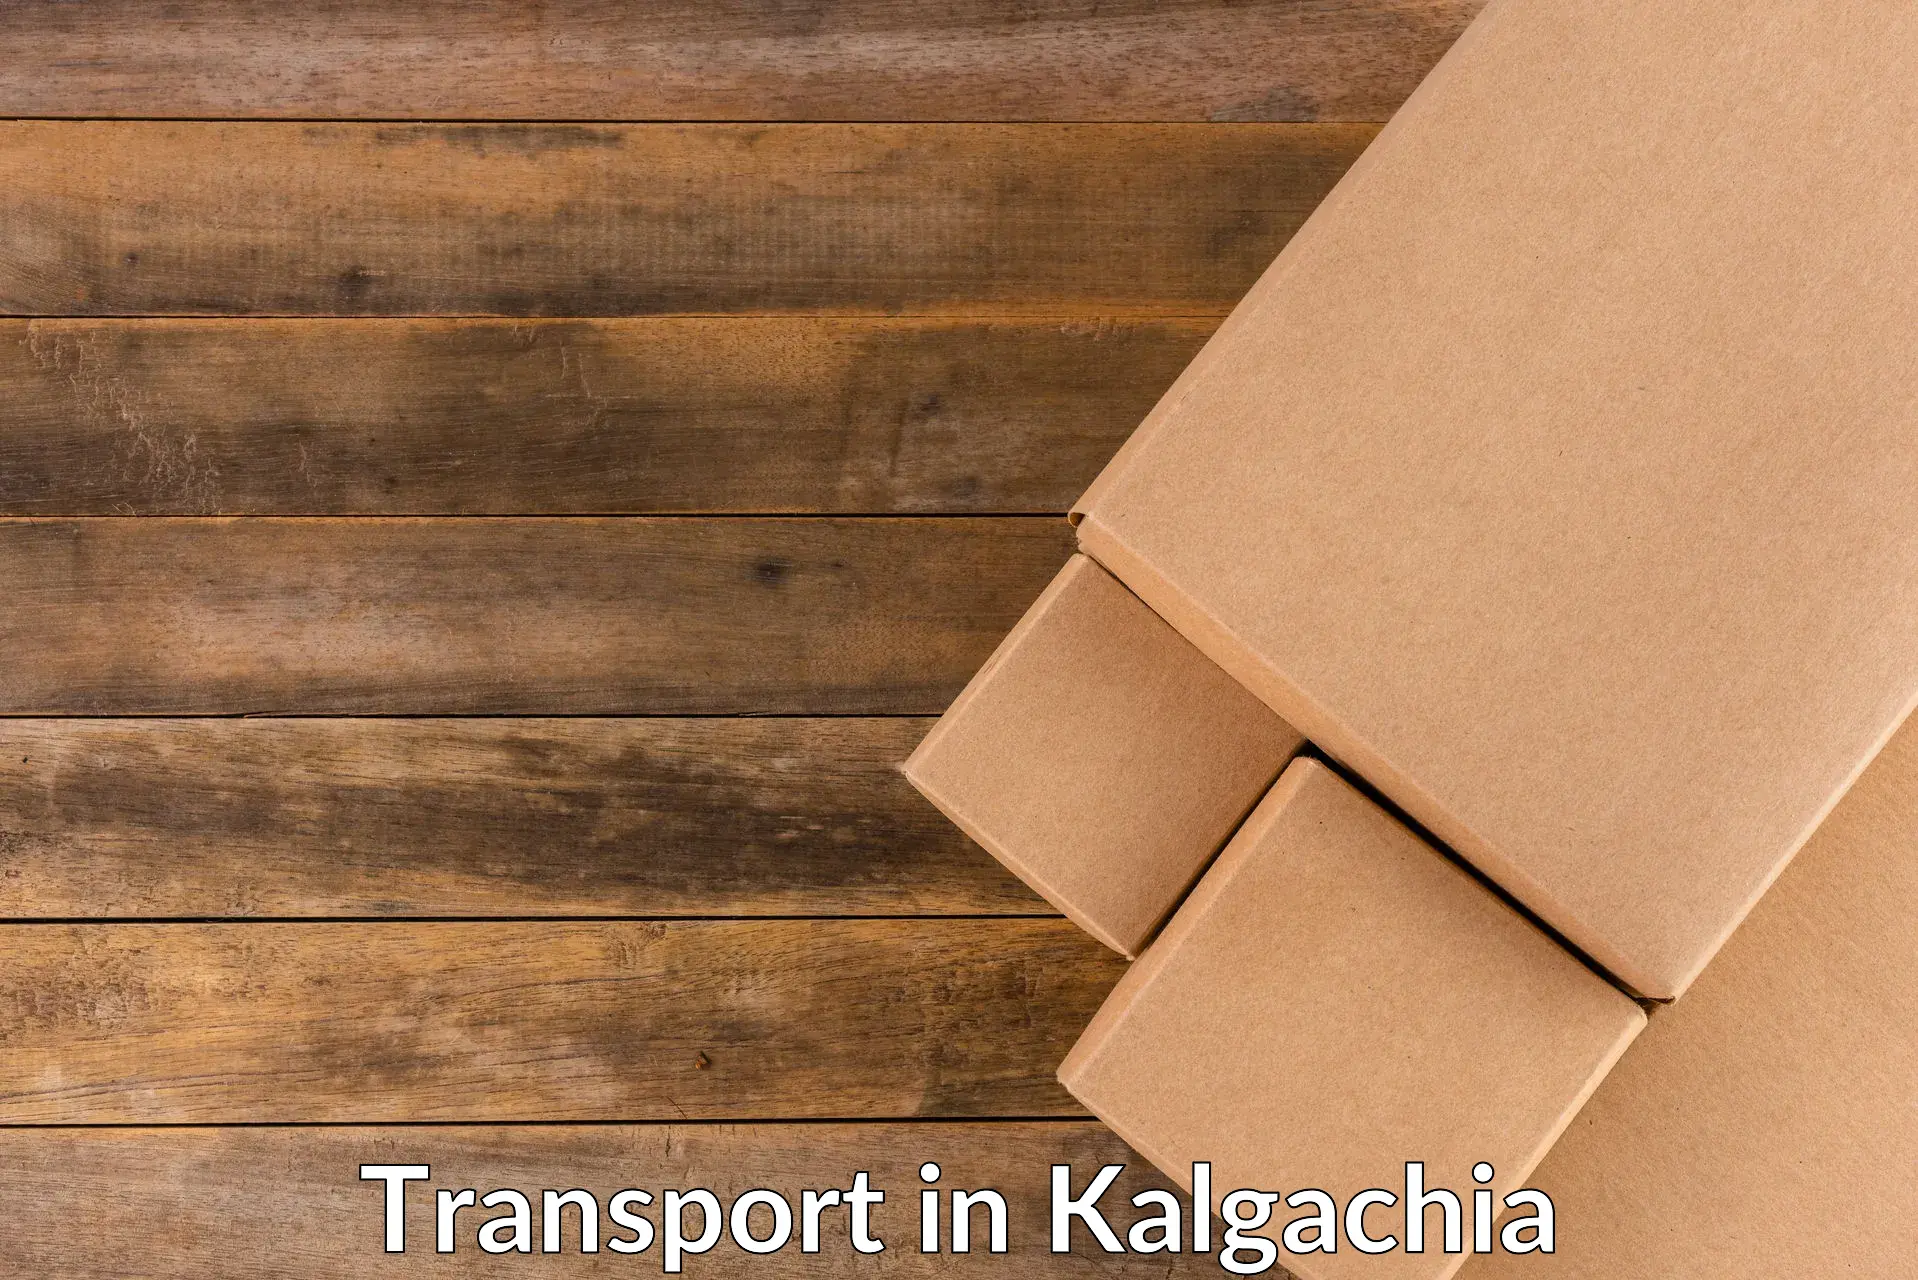 Container transport service in Kalgachia